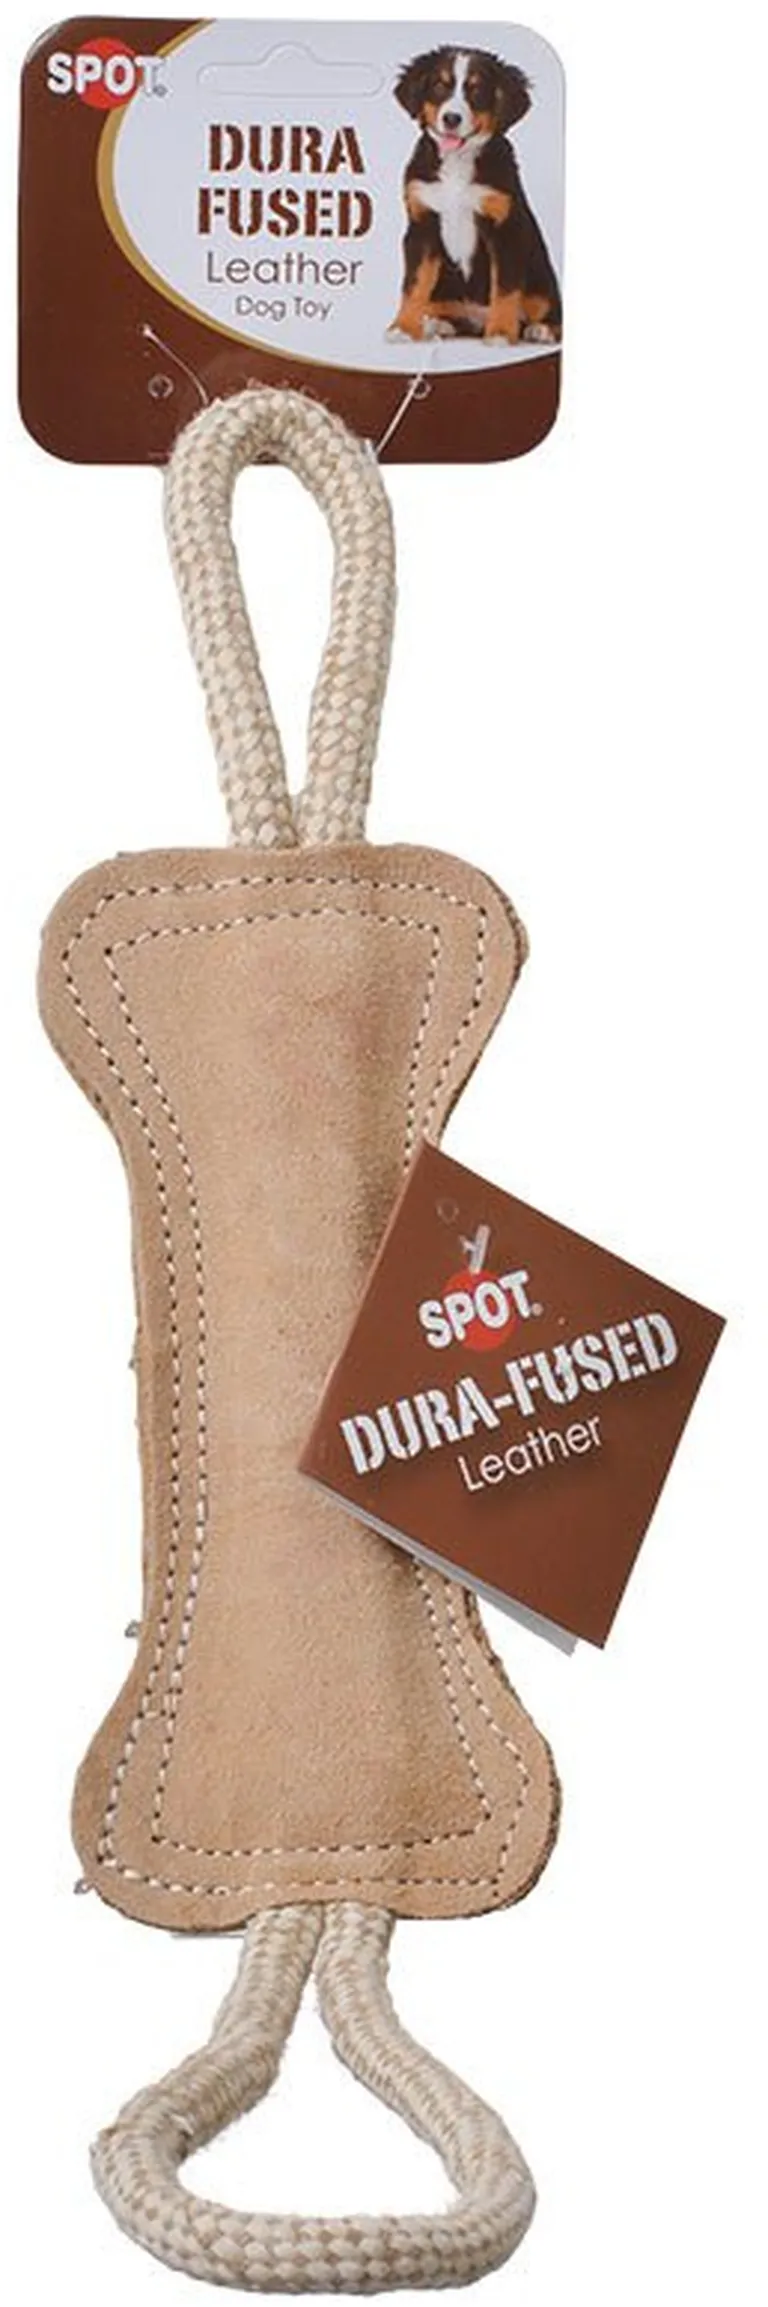 Spot Dura Fused Leather Bone Tug Dog Toy Photo 1